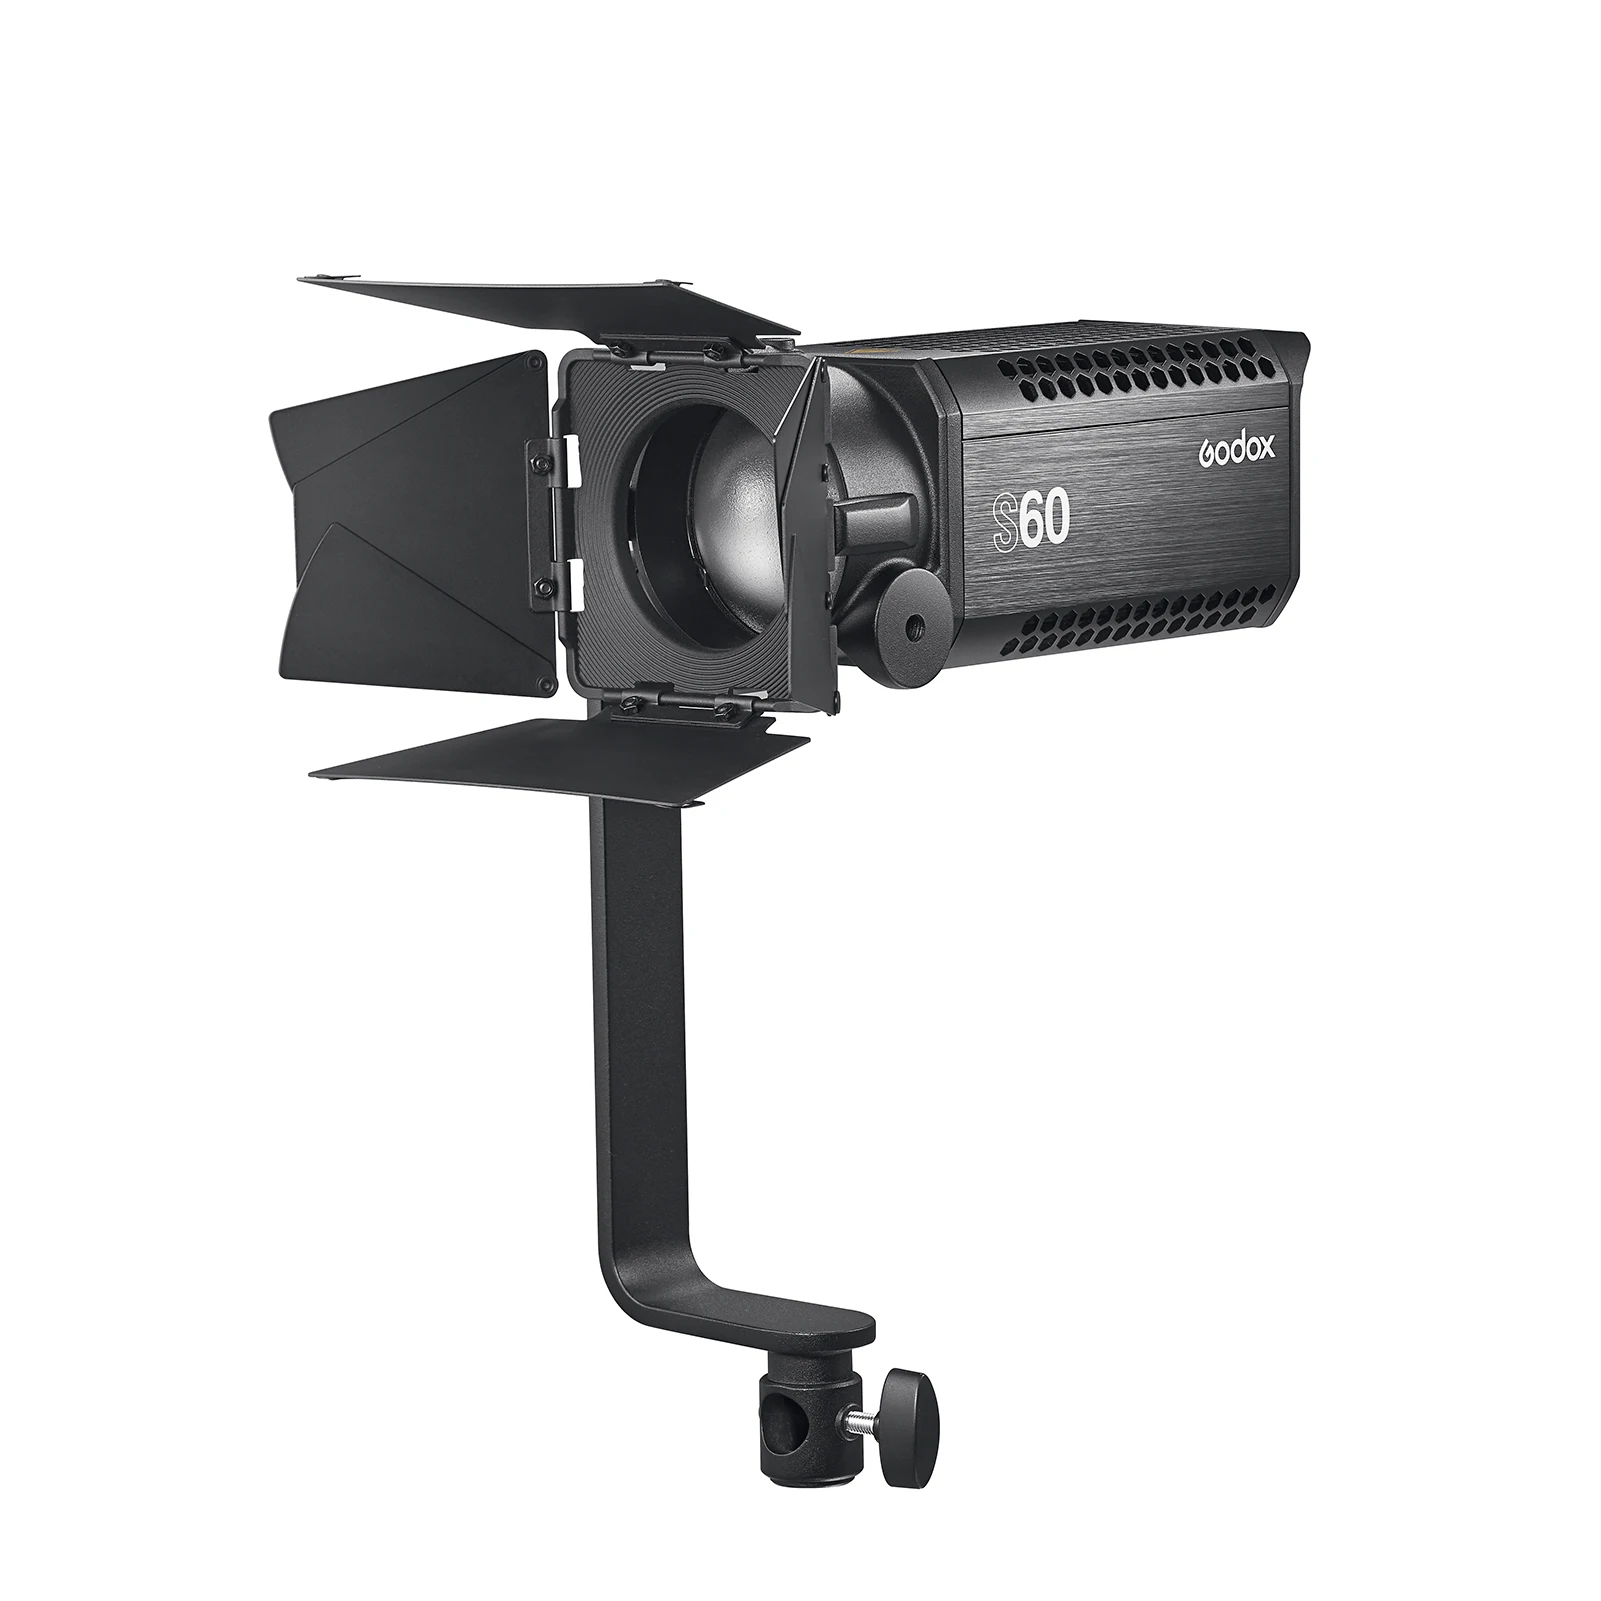 Portraits et Production de Films 60W CRI ≥96 TLCI ≥97 Focus Longueur et Luminosité Réglable Vidéo Spotlight pour Vidéos Godox S60 LED Focusing Lampe 5600K ± 300K Interviews 